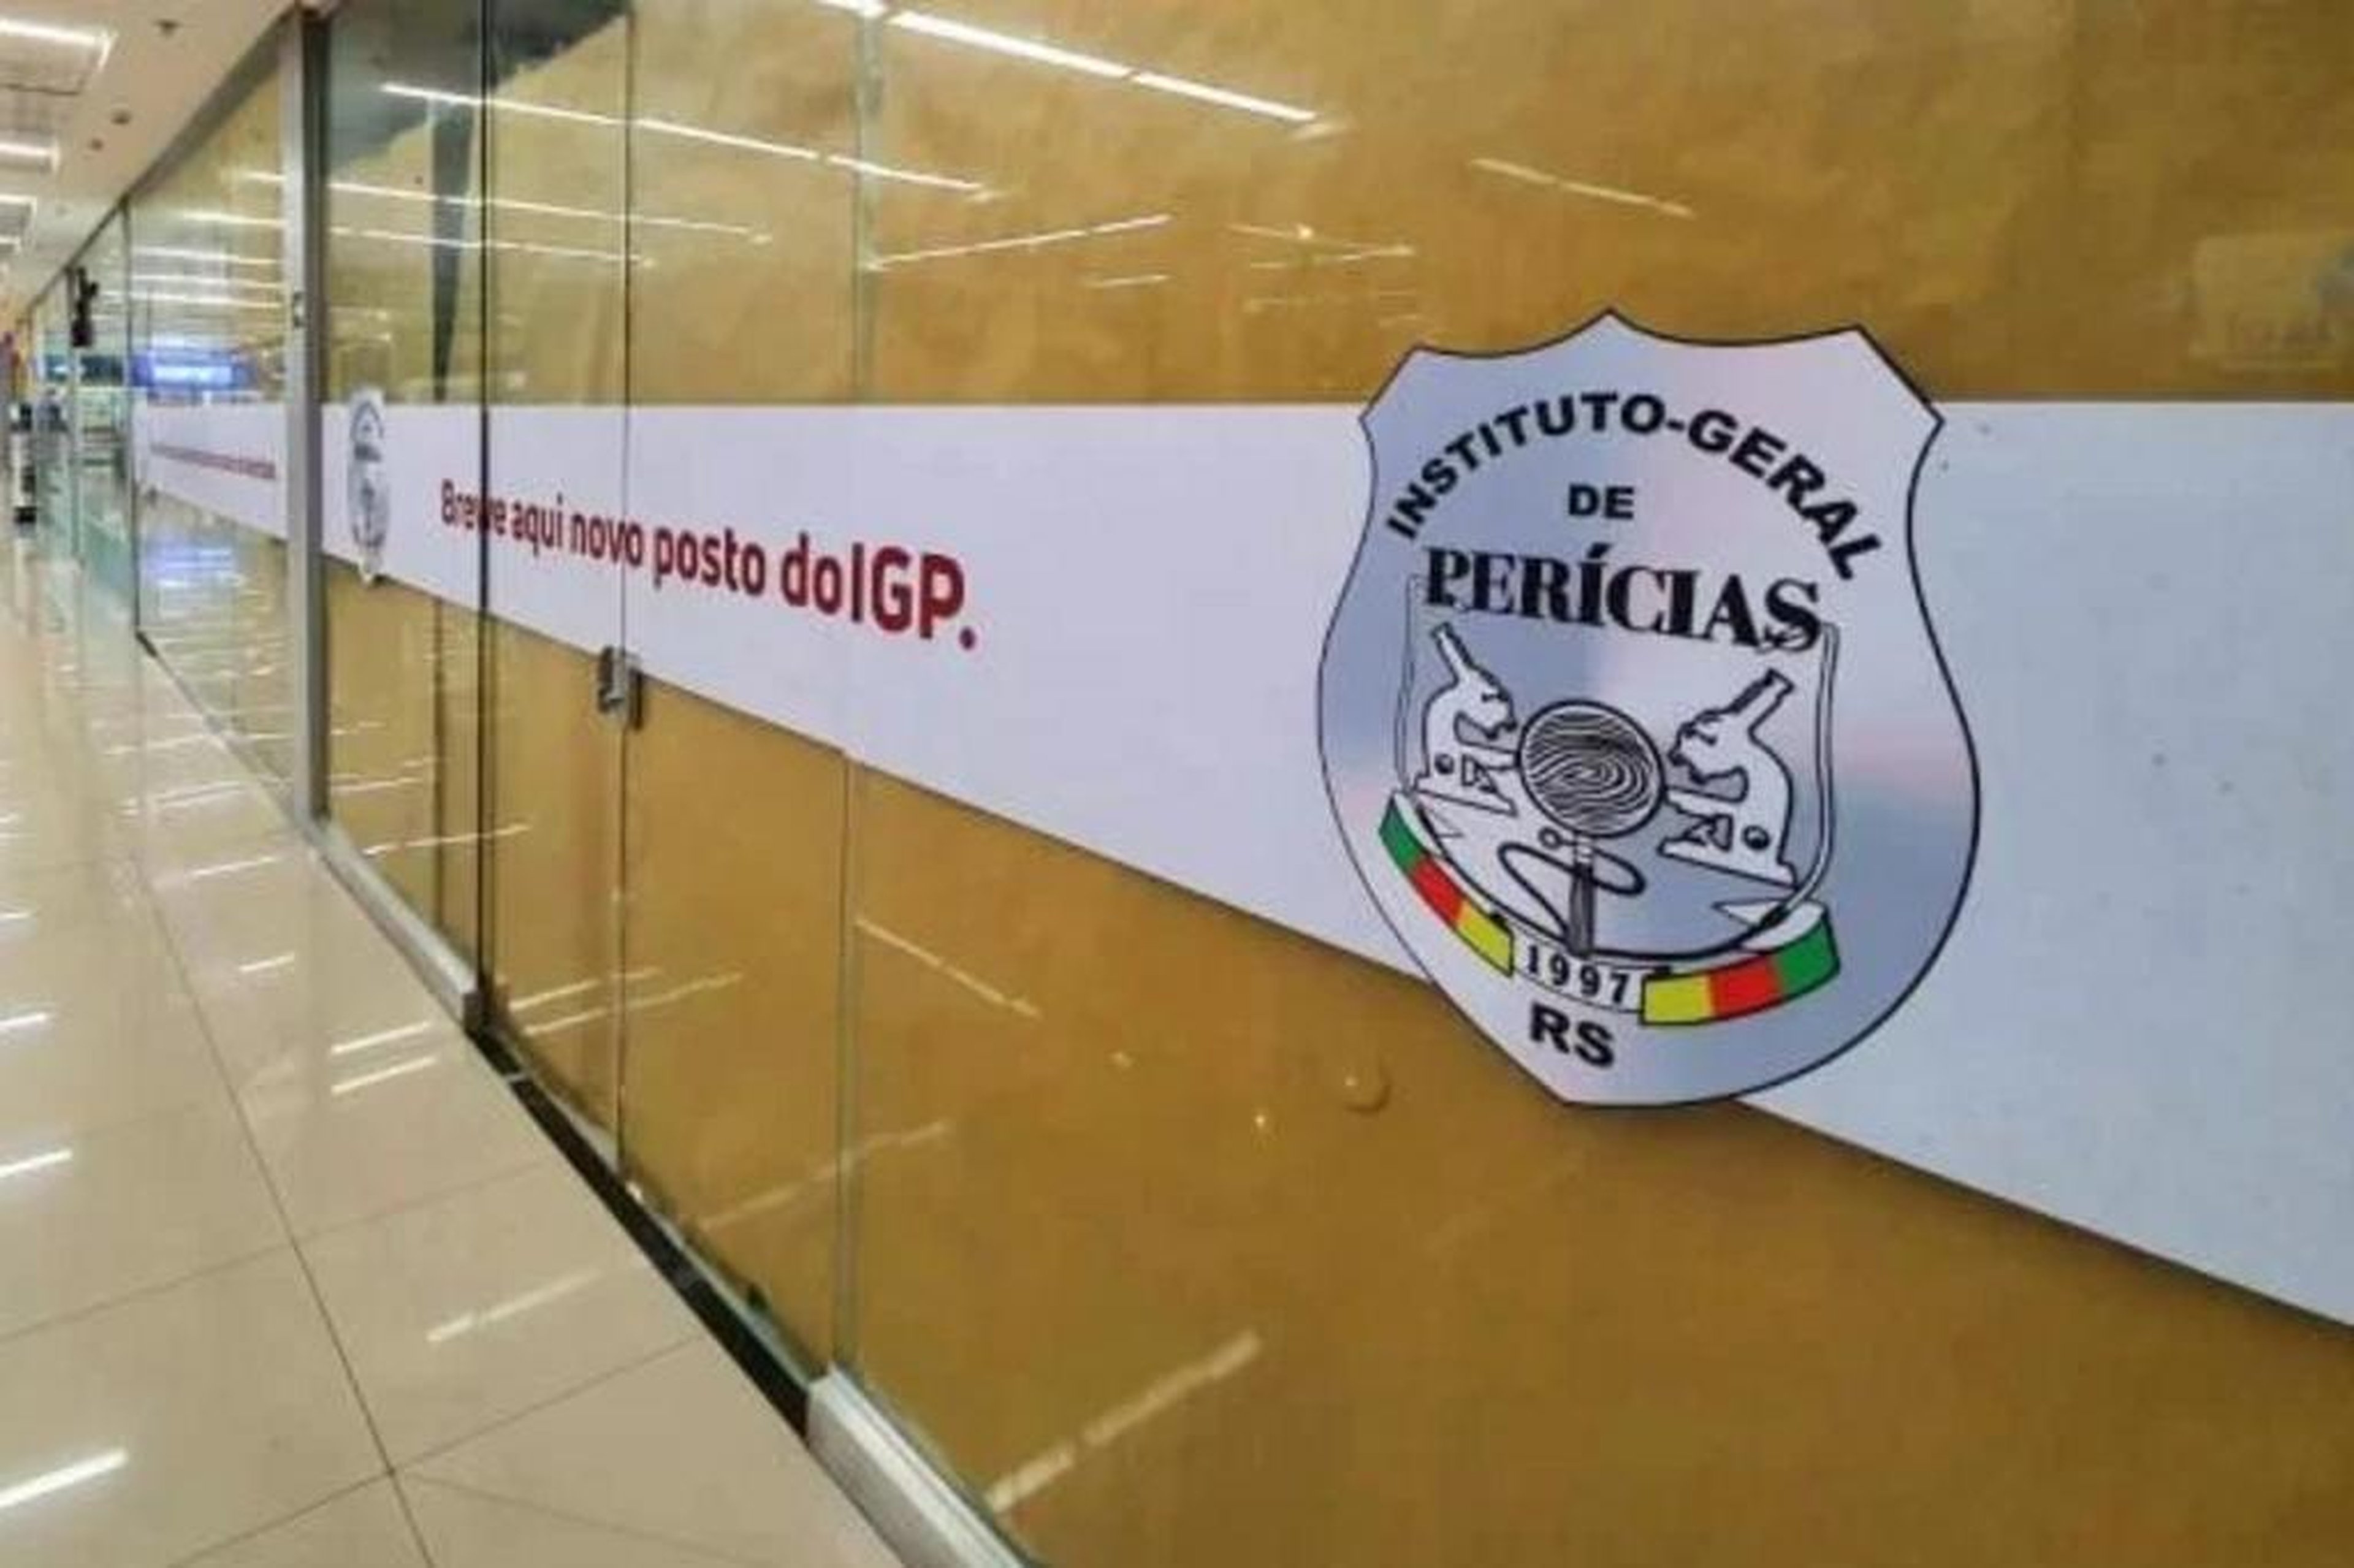 Instituto-geral de Perícias RS/Divulgação